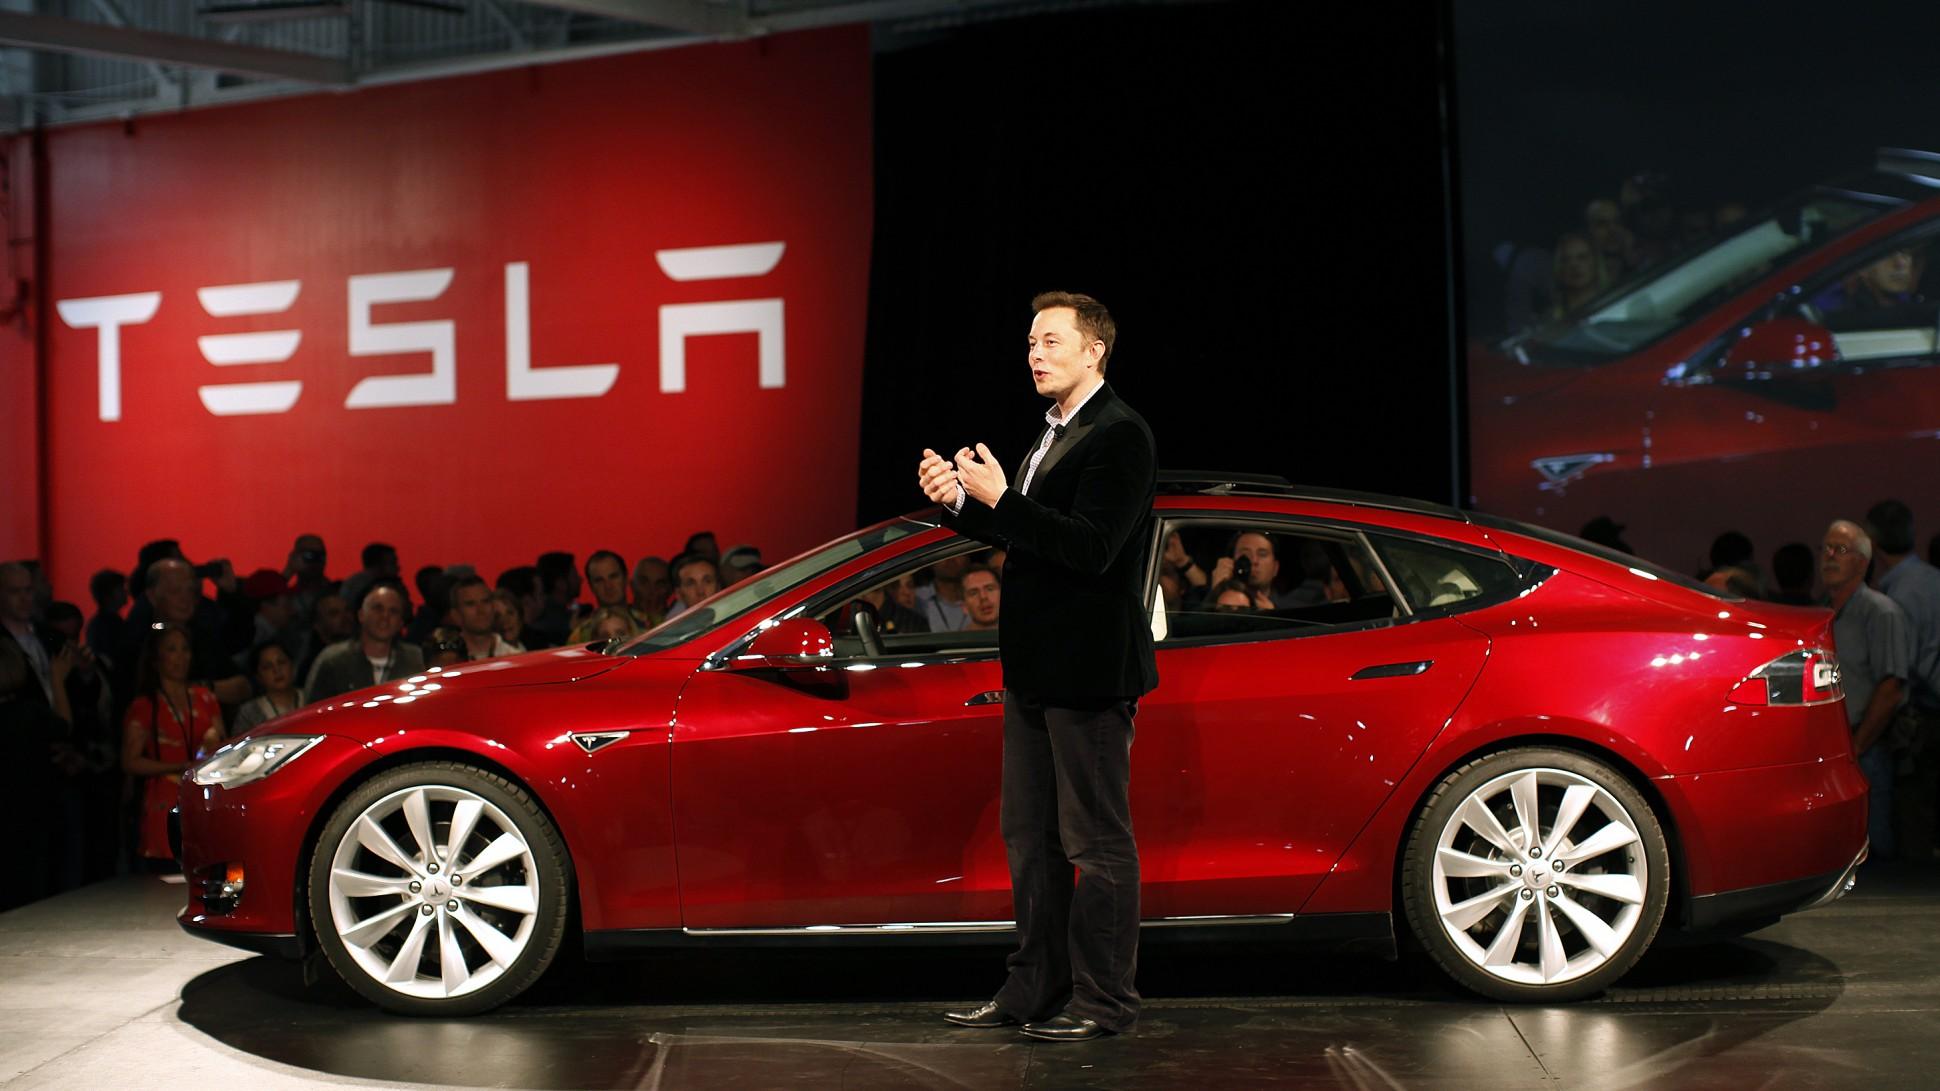 Elon Musk ข้างรถ Tesla